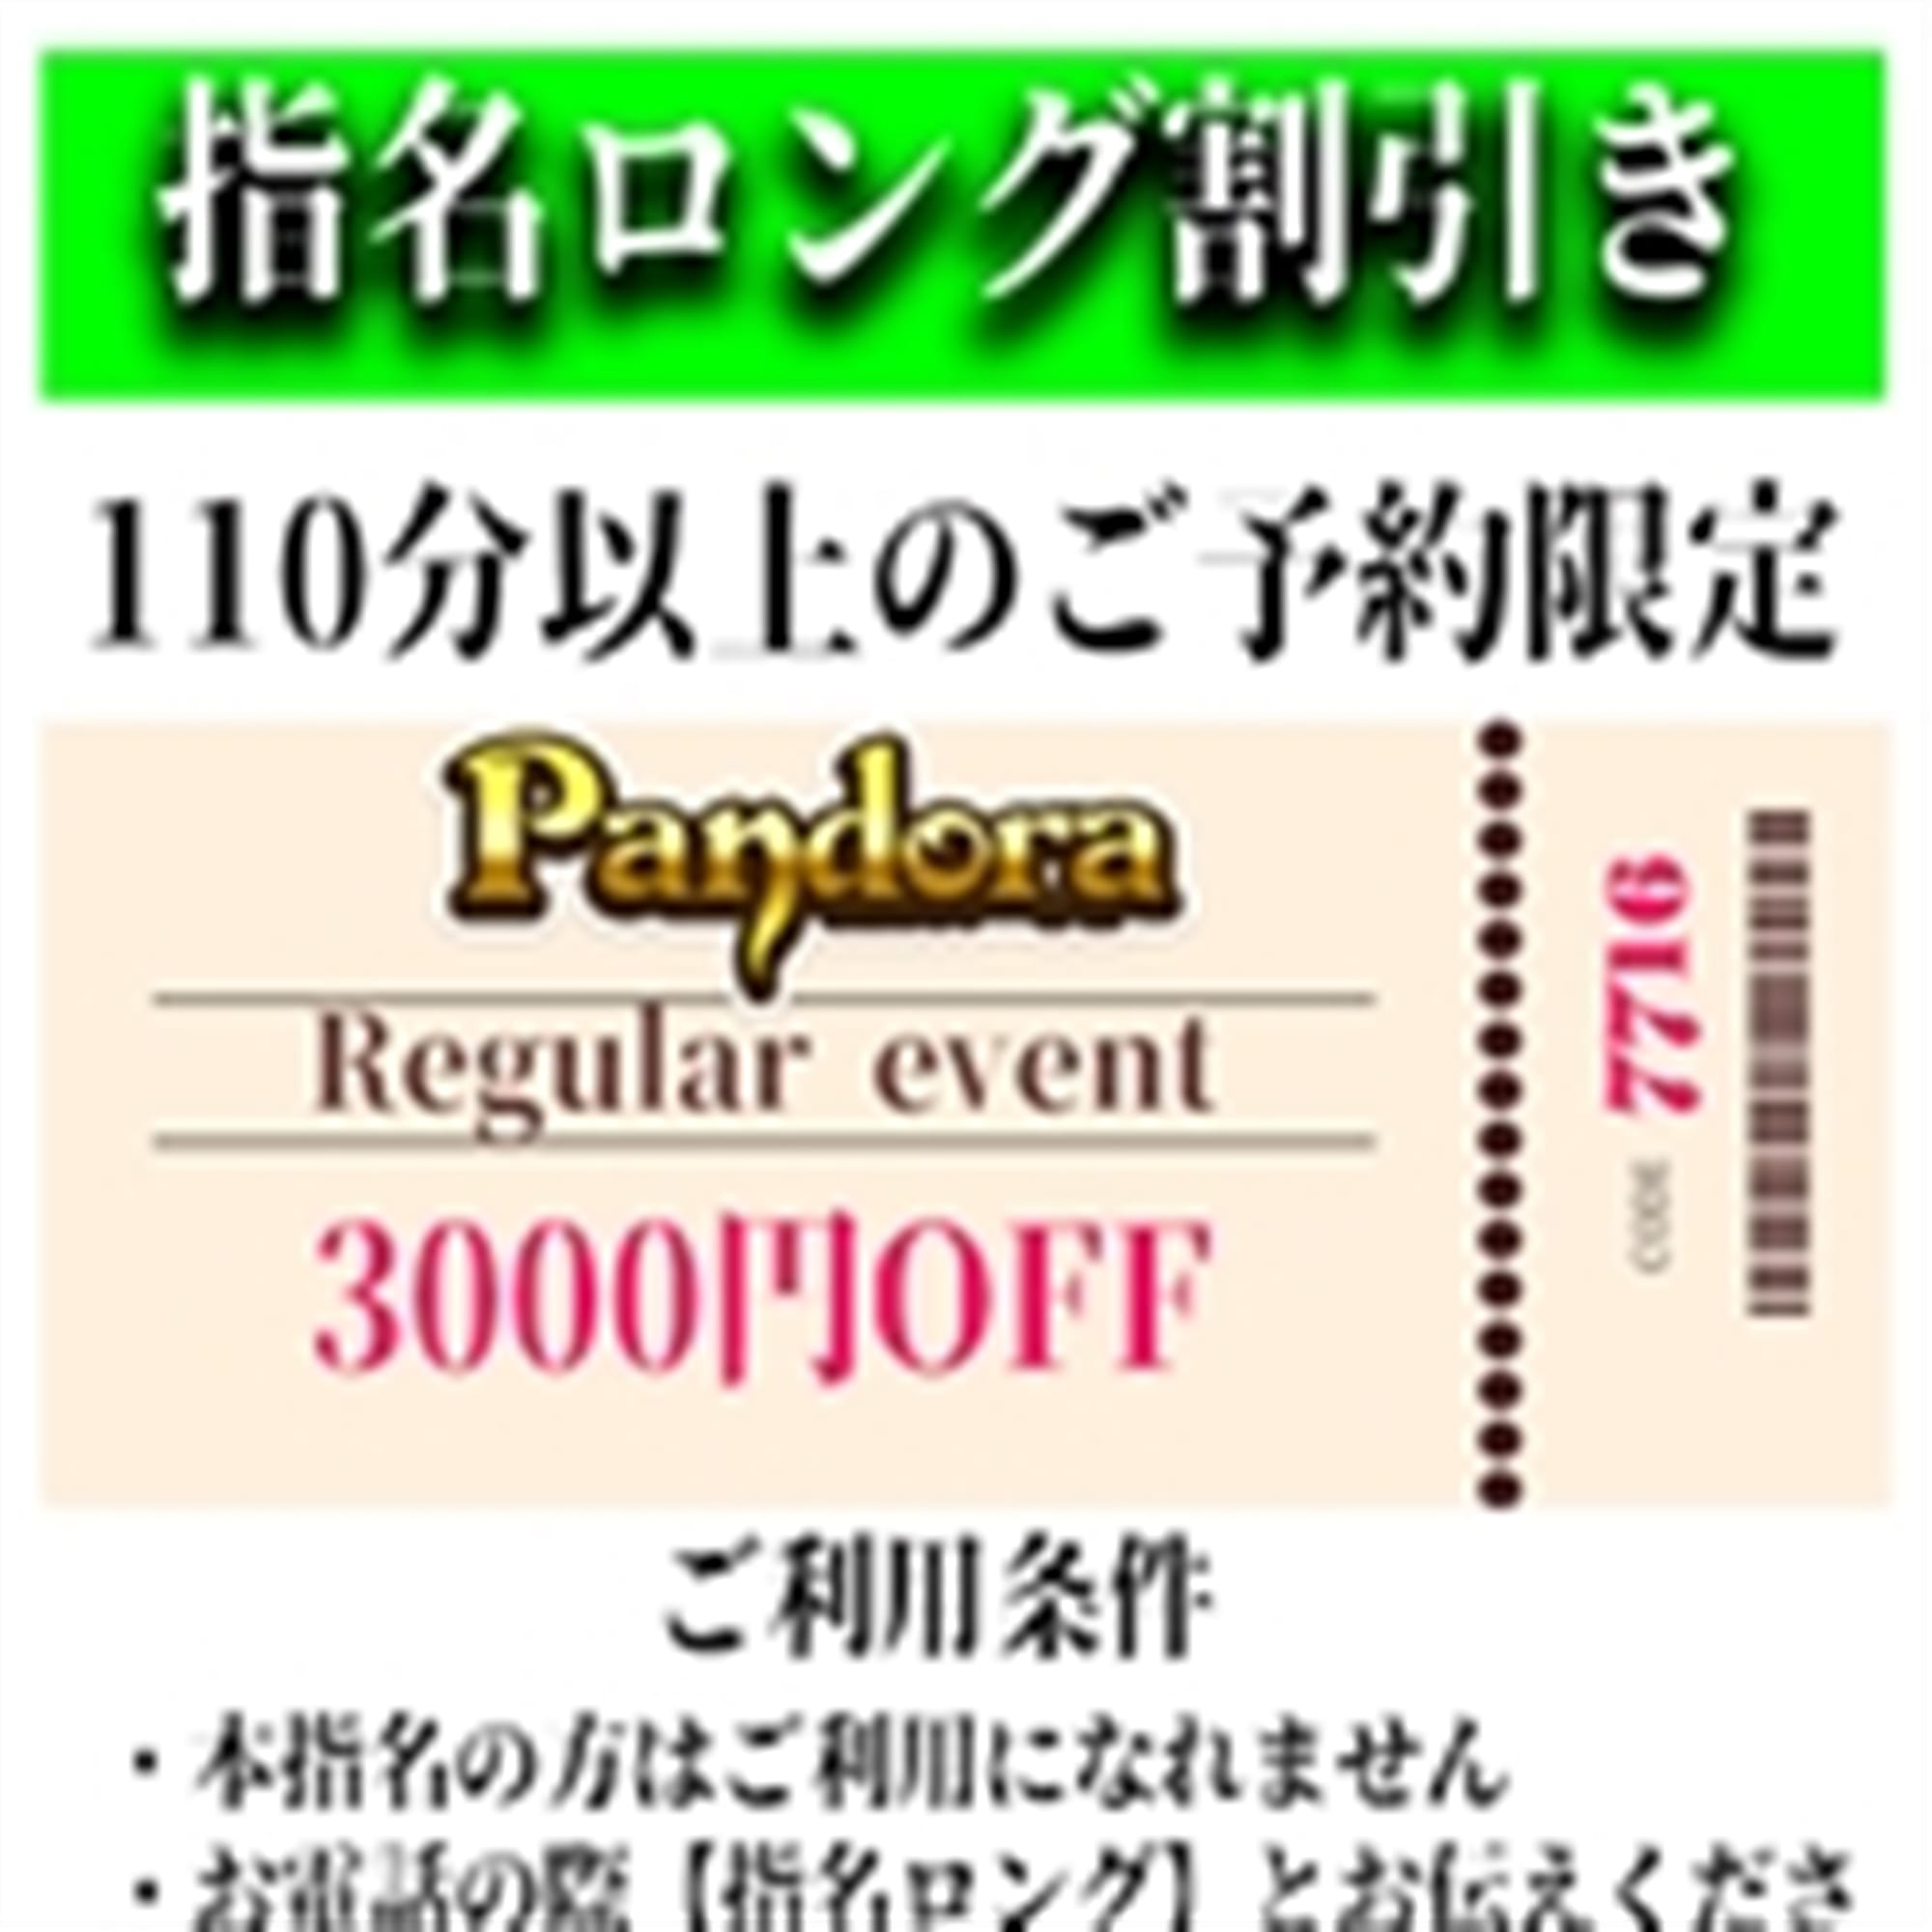 「ご指名のお客様も遊べるロングコース割引」04/25(木) 23:46 | Pandora(パンドラ)新潟のお得なニュース